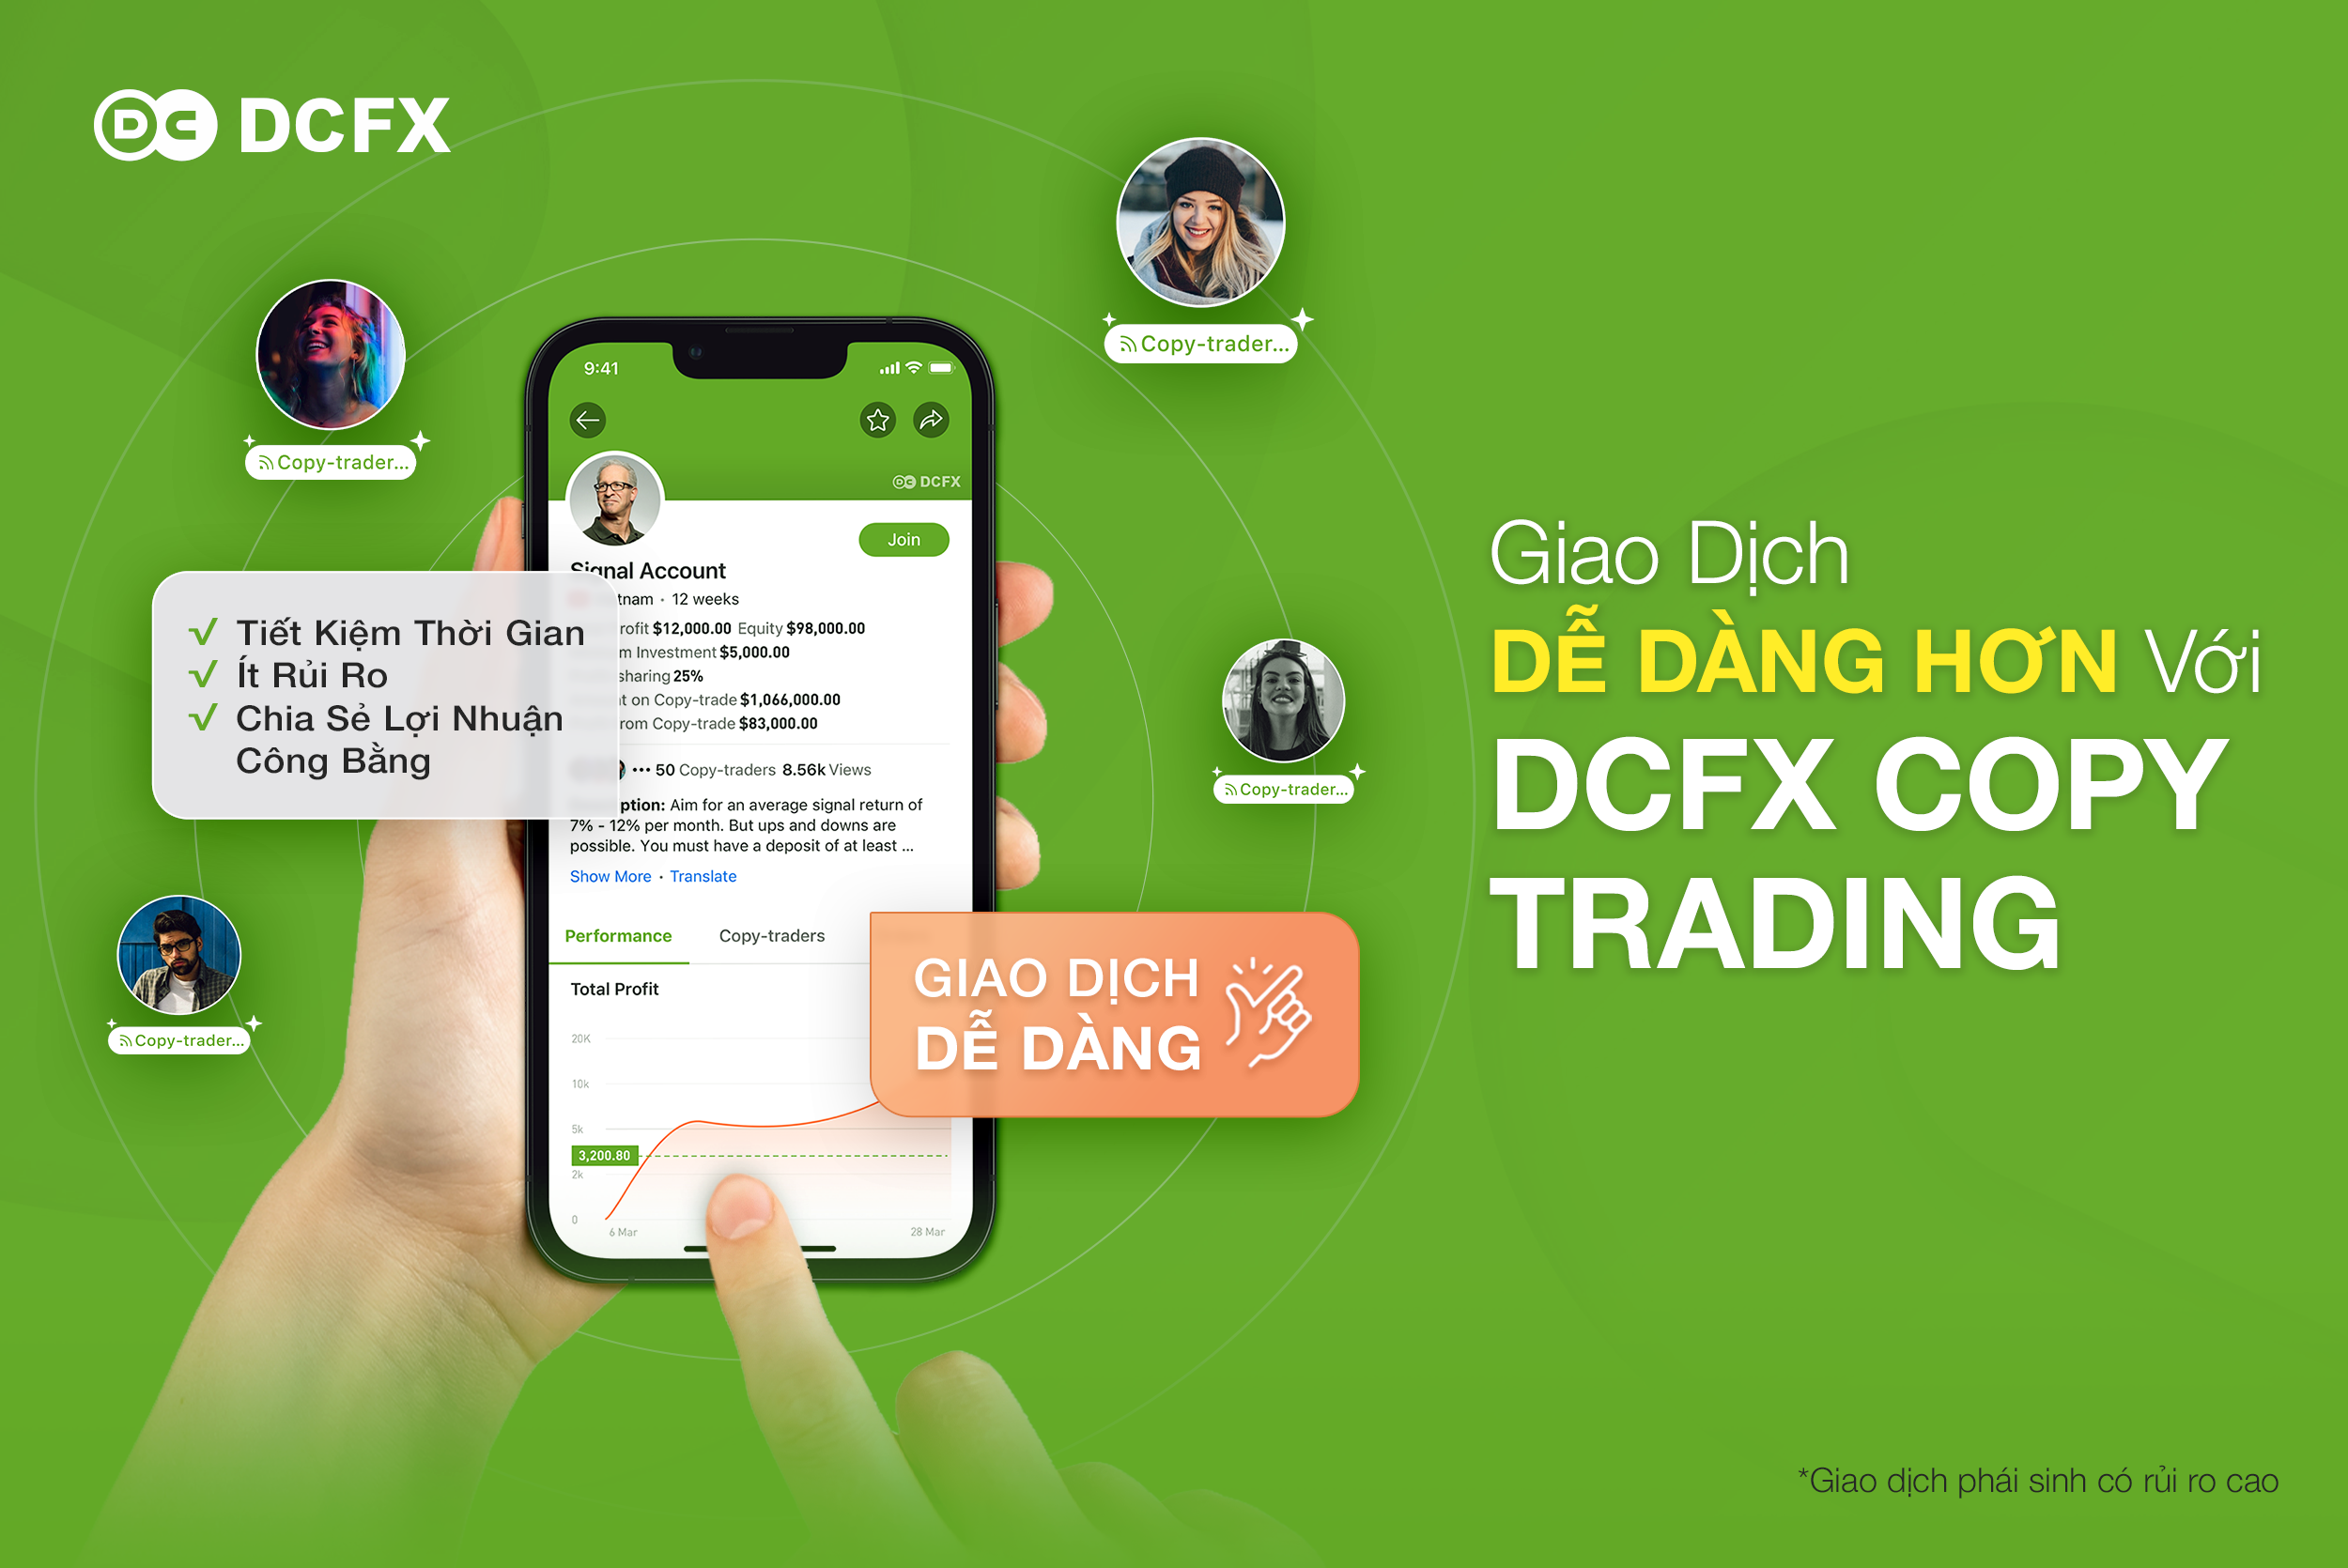 Chức Năng Siêu Việt “Sao chép giao dịch” đã có trên DCFX